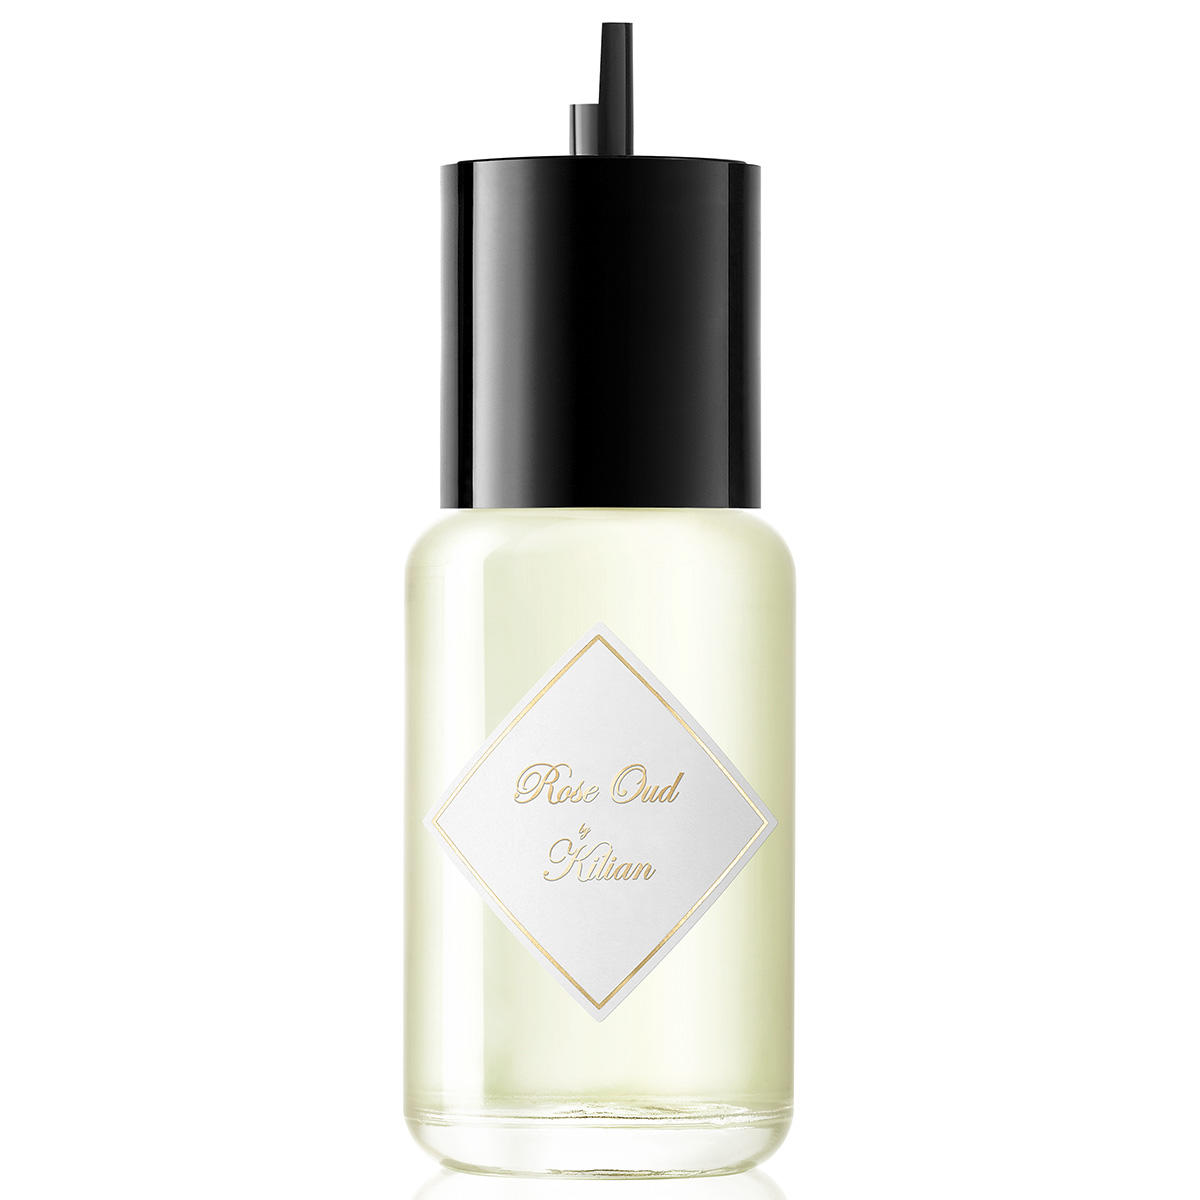 Kilian Paris Rose Oud Eau de Parfum Refill 50 ml - 1